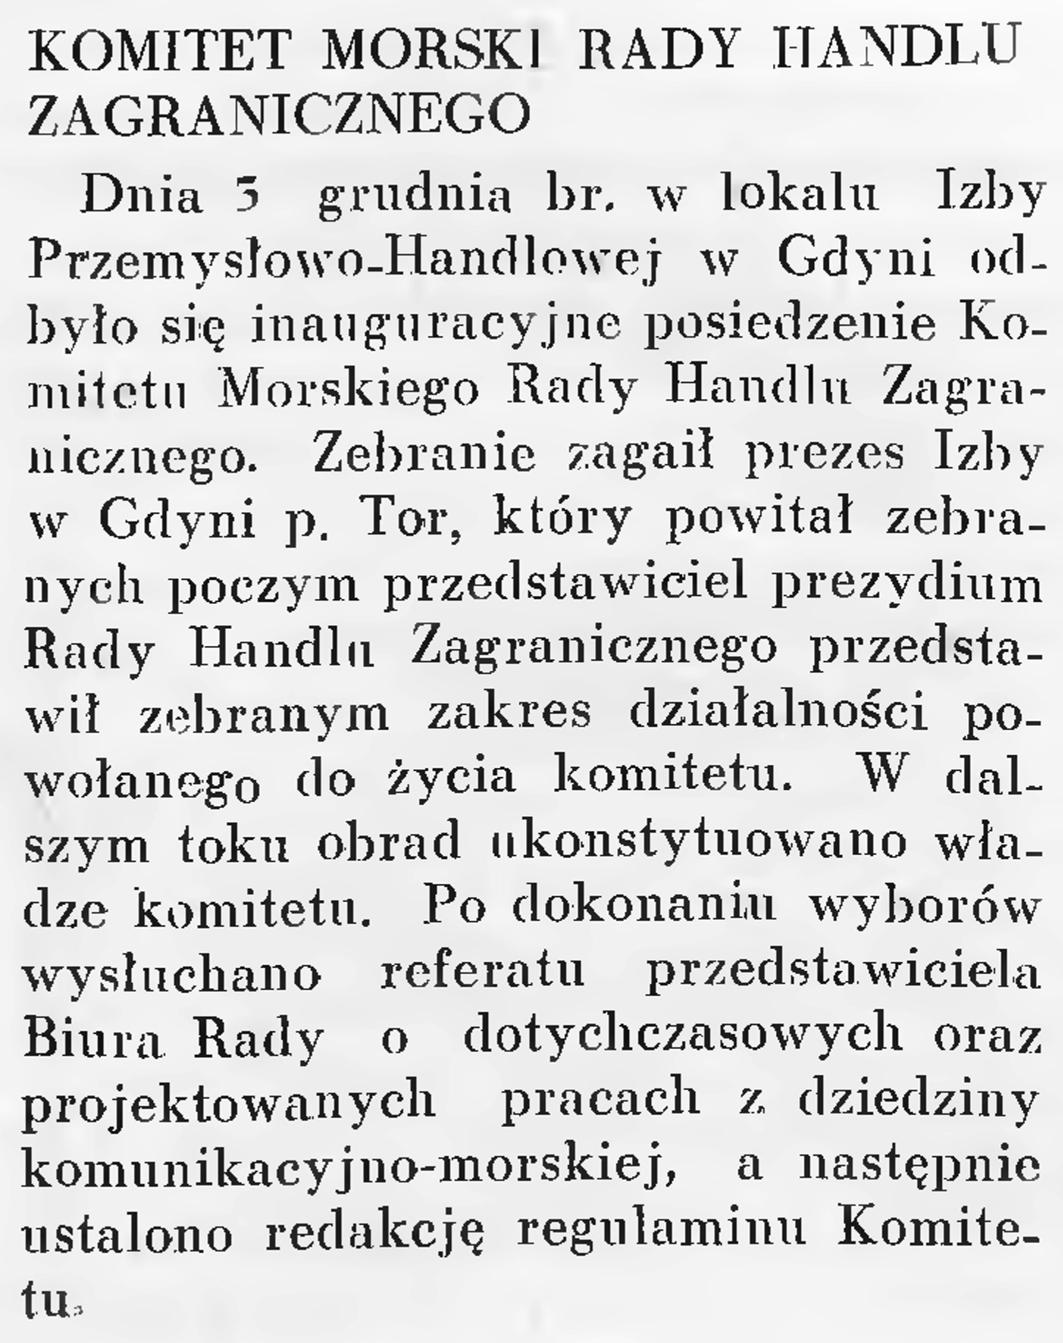 Komitet Morski Rady Handlu Zagranicznego // Wiadomości Portu Gdyńskiego. - 1937, nr 12, s. 19